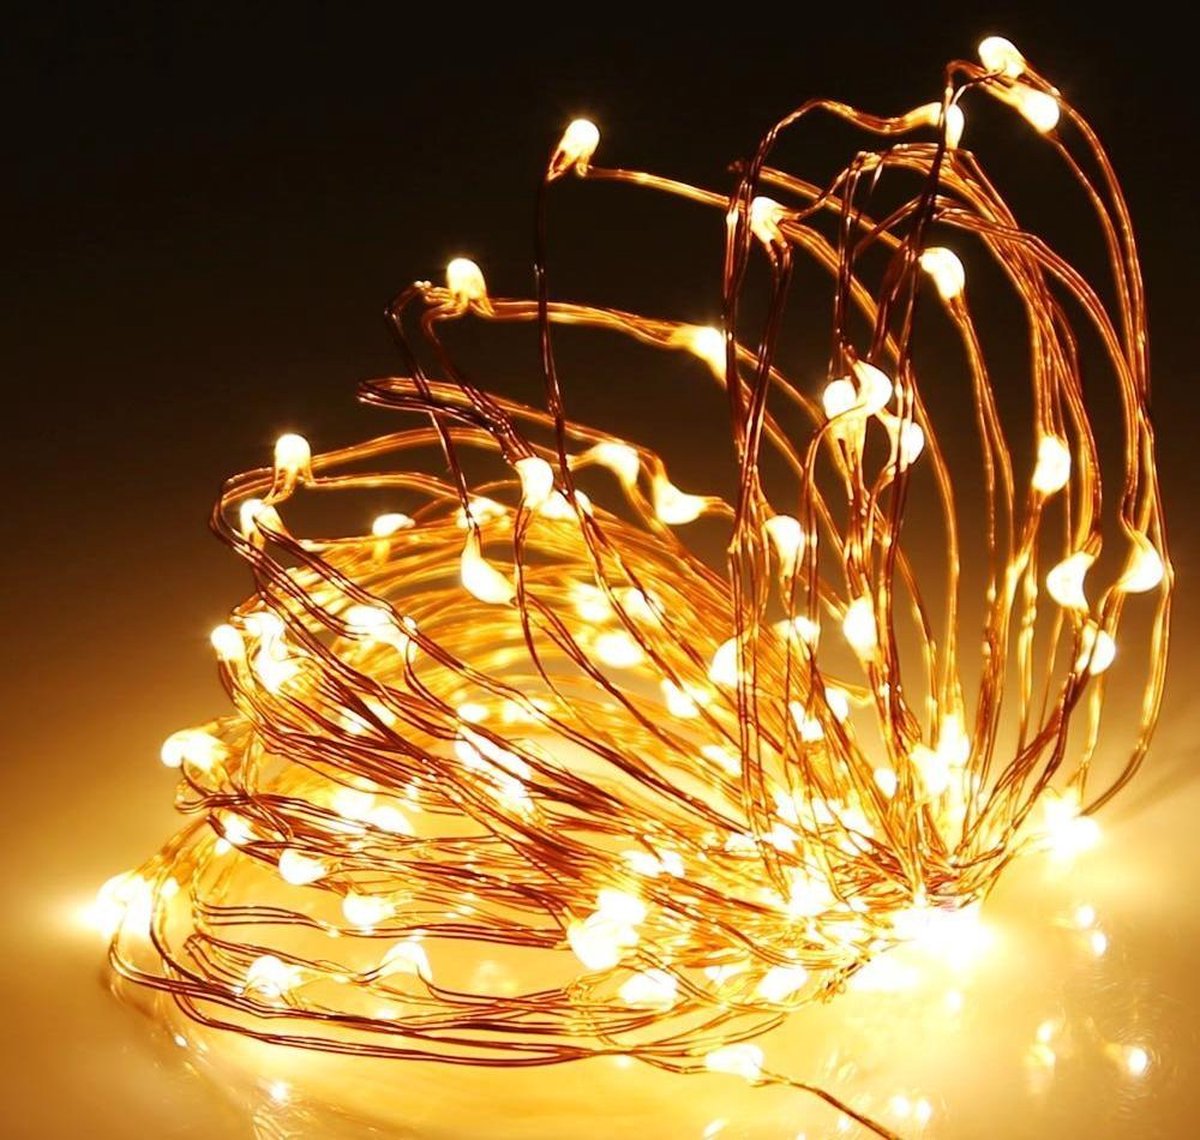 Kerstverlichting 2 Meter • LED • Kerstverlichting • Kerstlampje • Kerstlampjes • Kerst LED Verlichting • LED Lampjes Batterij • Kerst LED • Kerst • Strip Kerst 20 LED's • Kerst Lampjes Op Batterij • LED Lampjes op Batterij • LED Lampjes Kerst